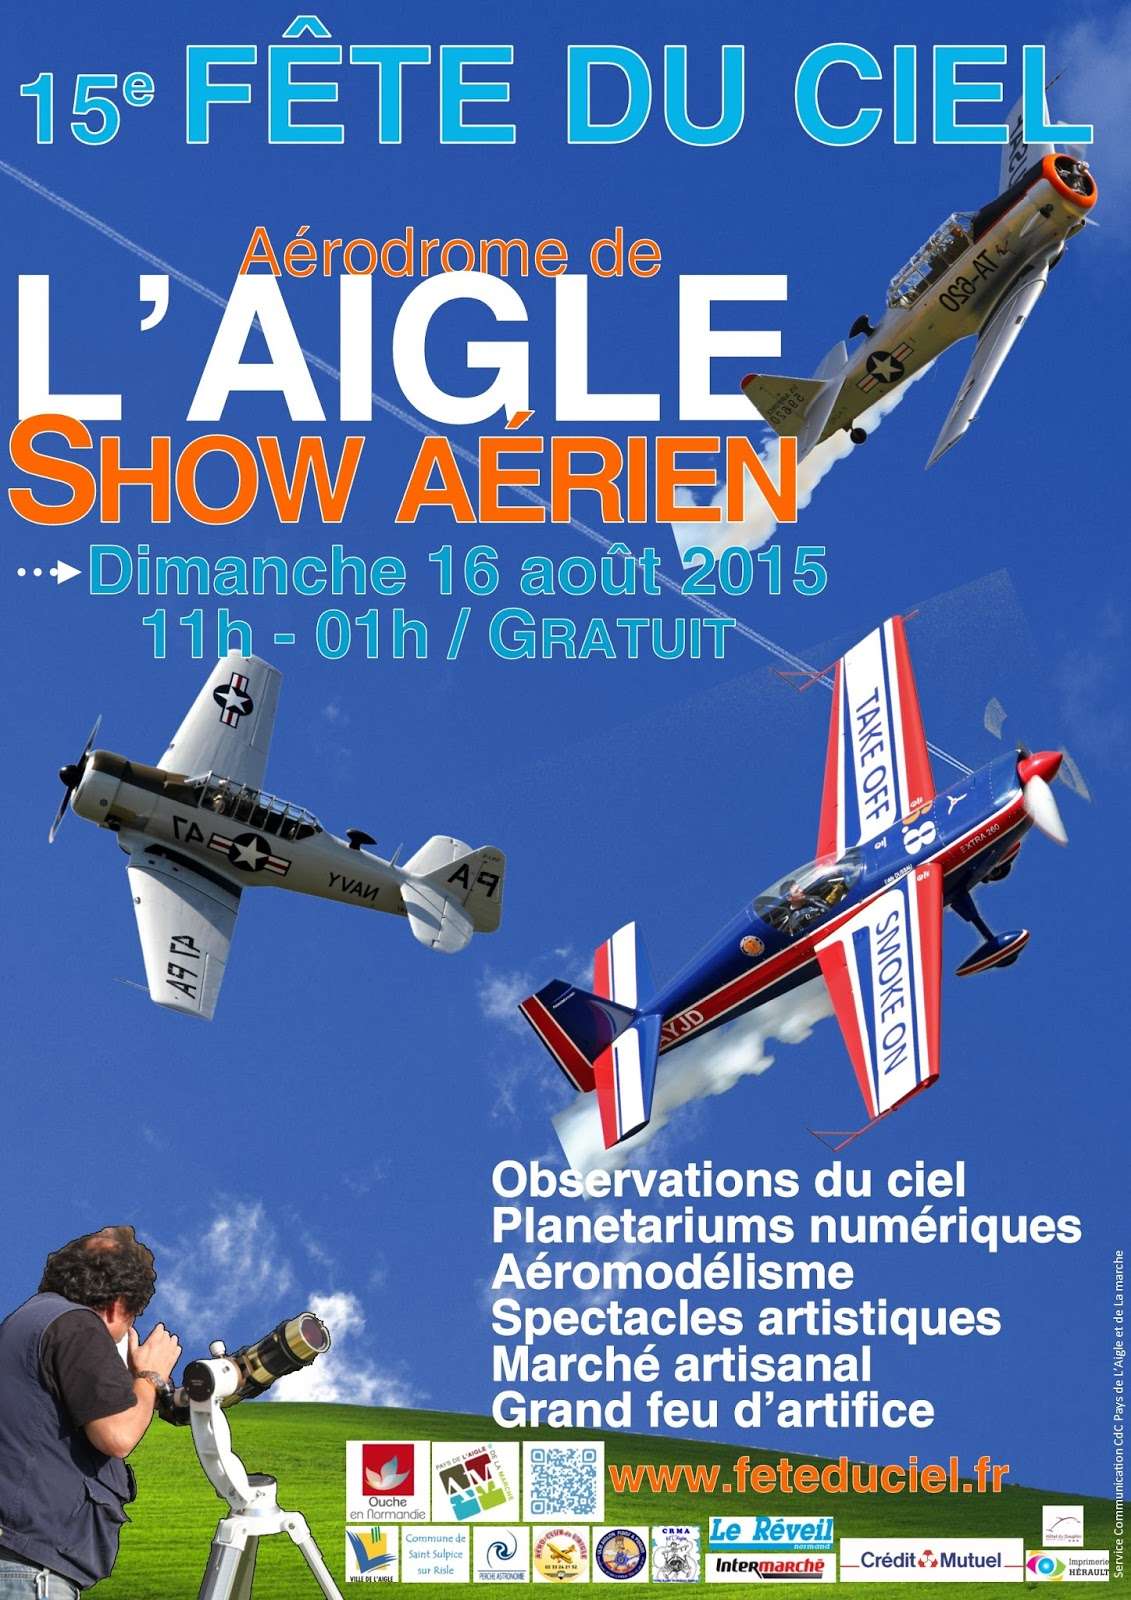 Fête du Ciel 2015, Saint-Michel, Aérodrome de L'Aigle ,Basse-Normandie, meeting aériens 2015, meeting aeriens 2015 